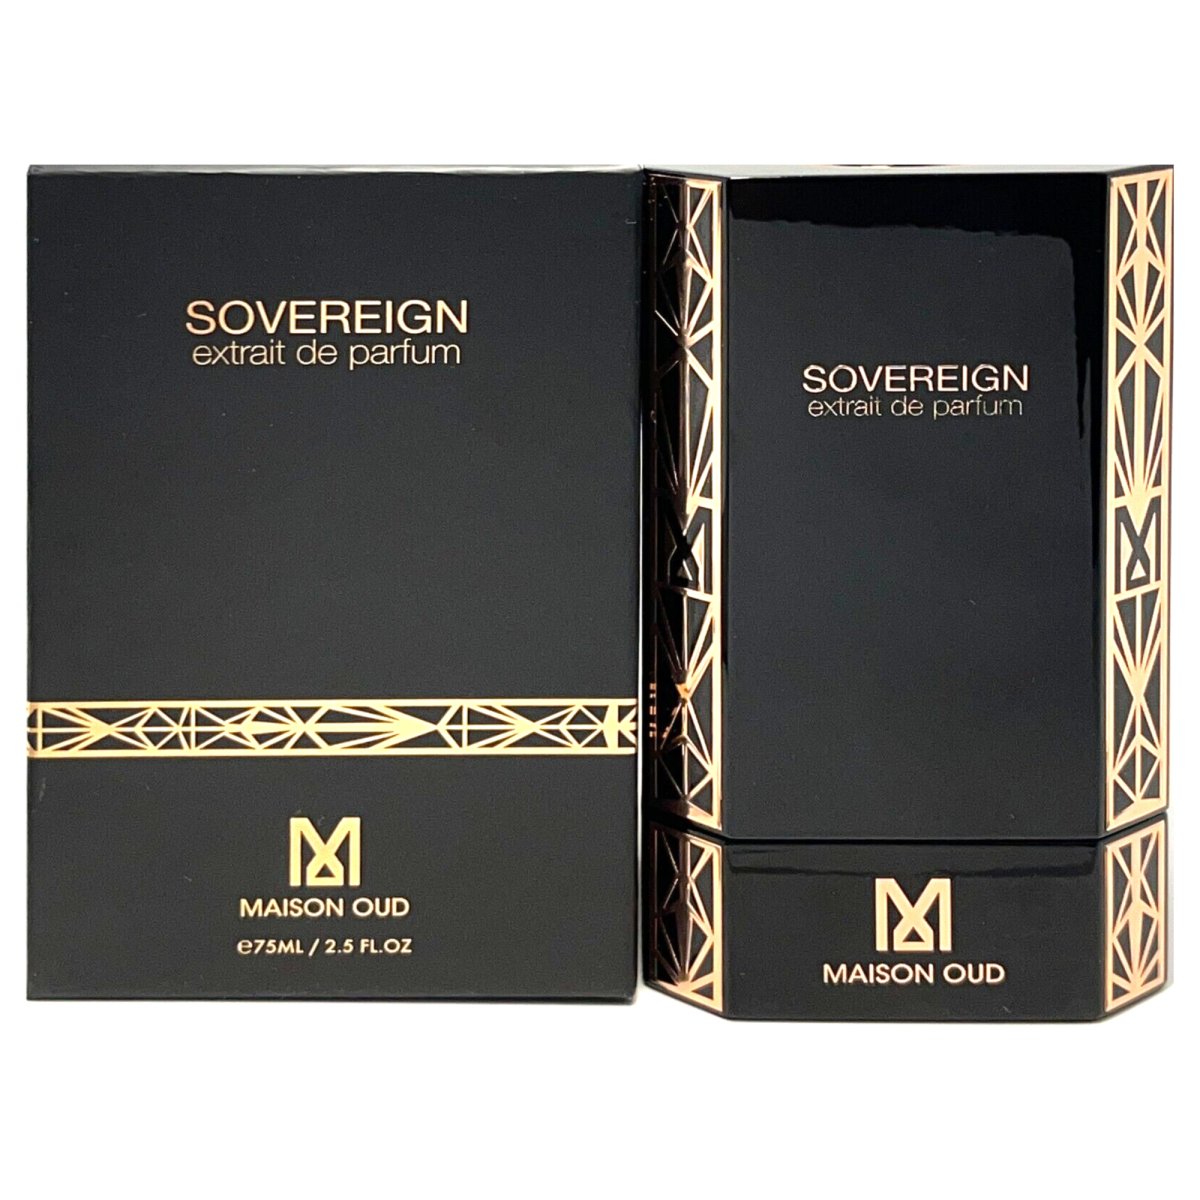 Maison Oud Sovereign Extrait De Parfum 2.5 FL. OZ. Spray - Perfume Headquarters - MAISON OUD - 3366561531481 - Fragrance